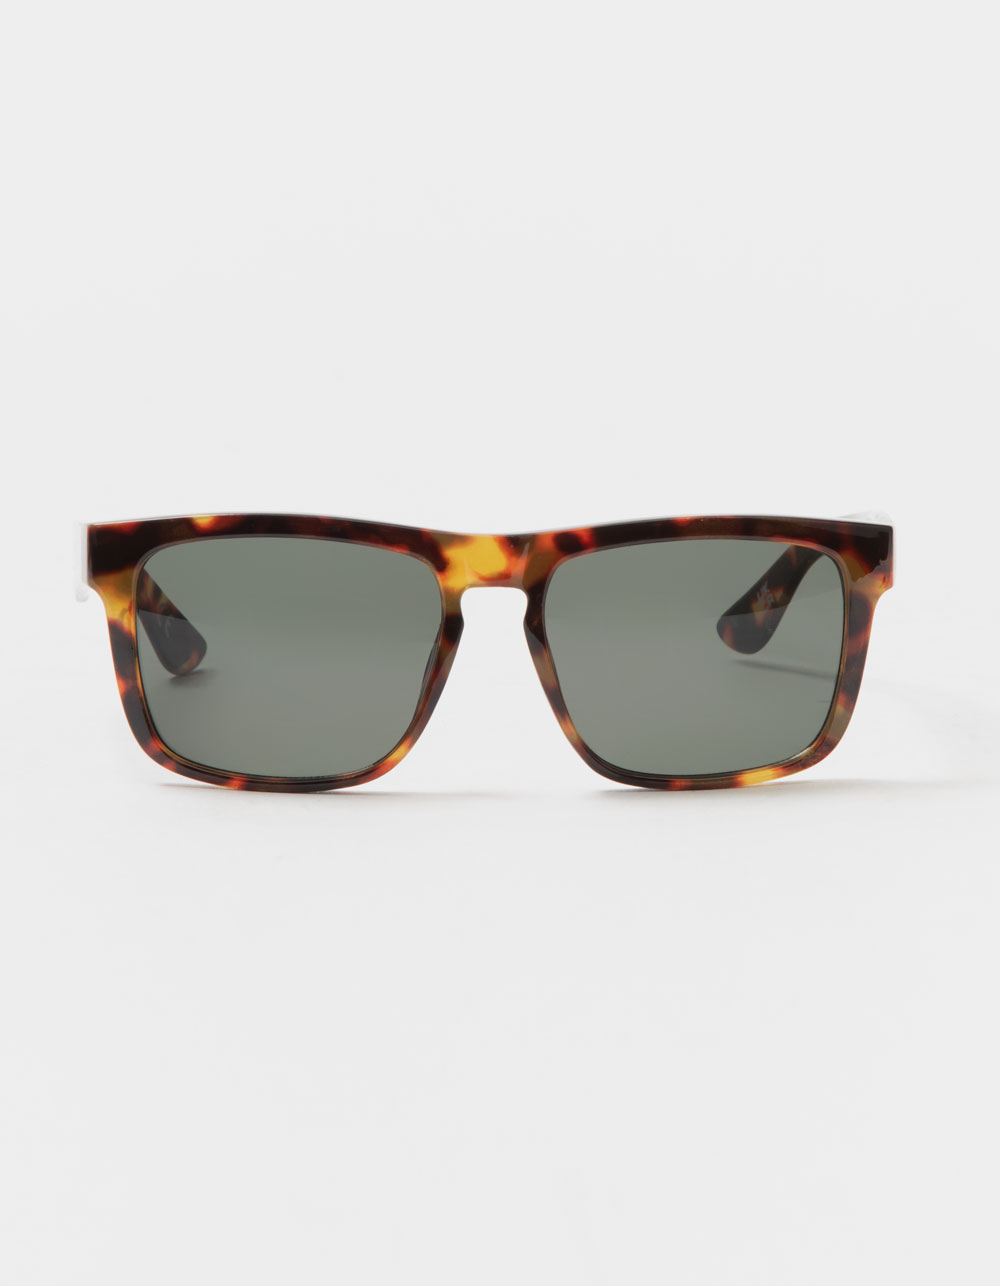 VANS Squared Off Sunglasses - TORTOISE | Tillys